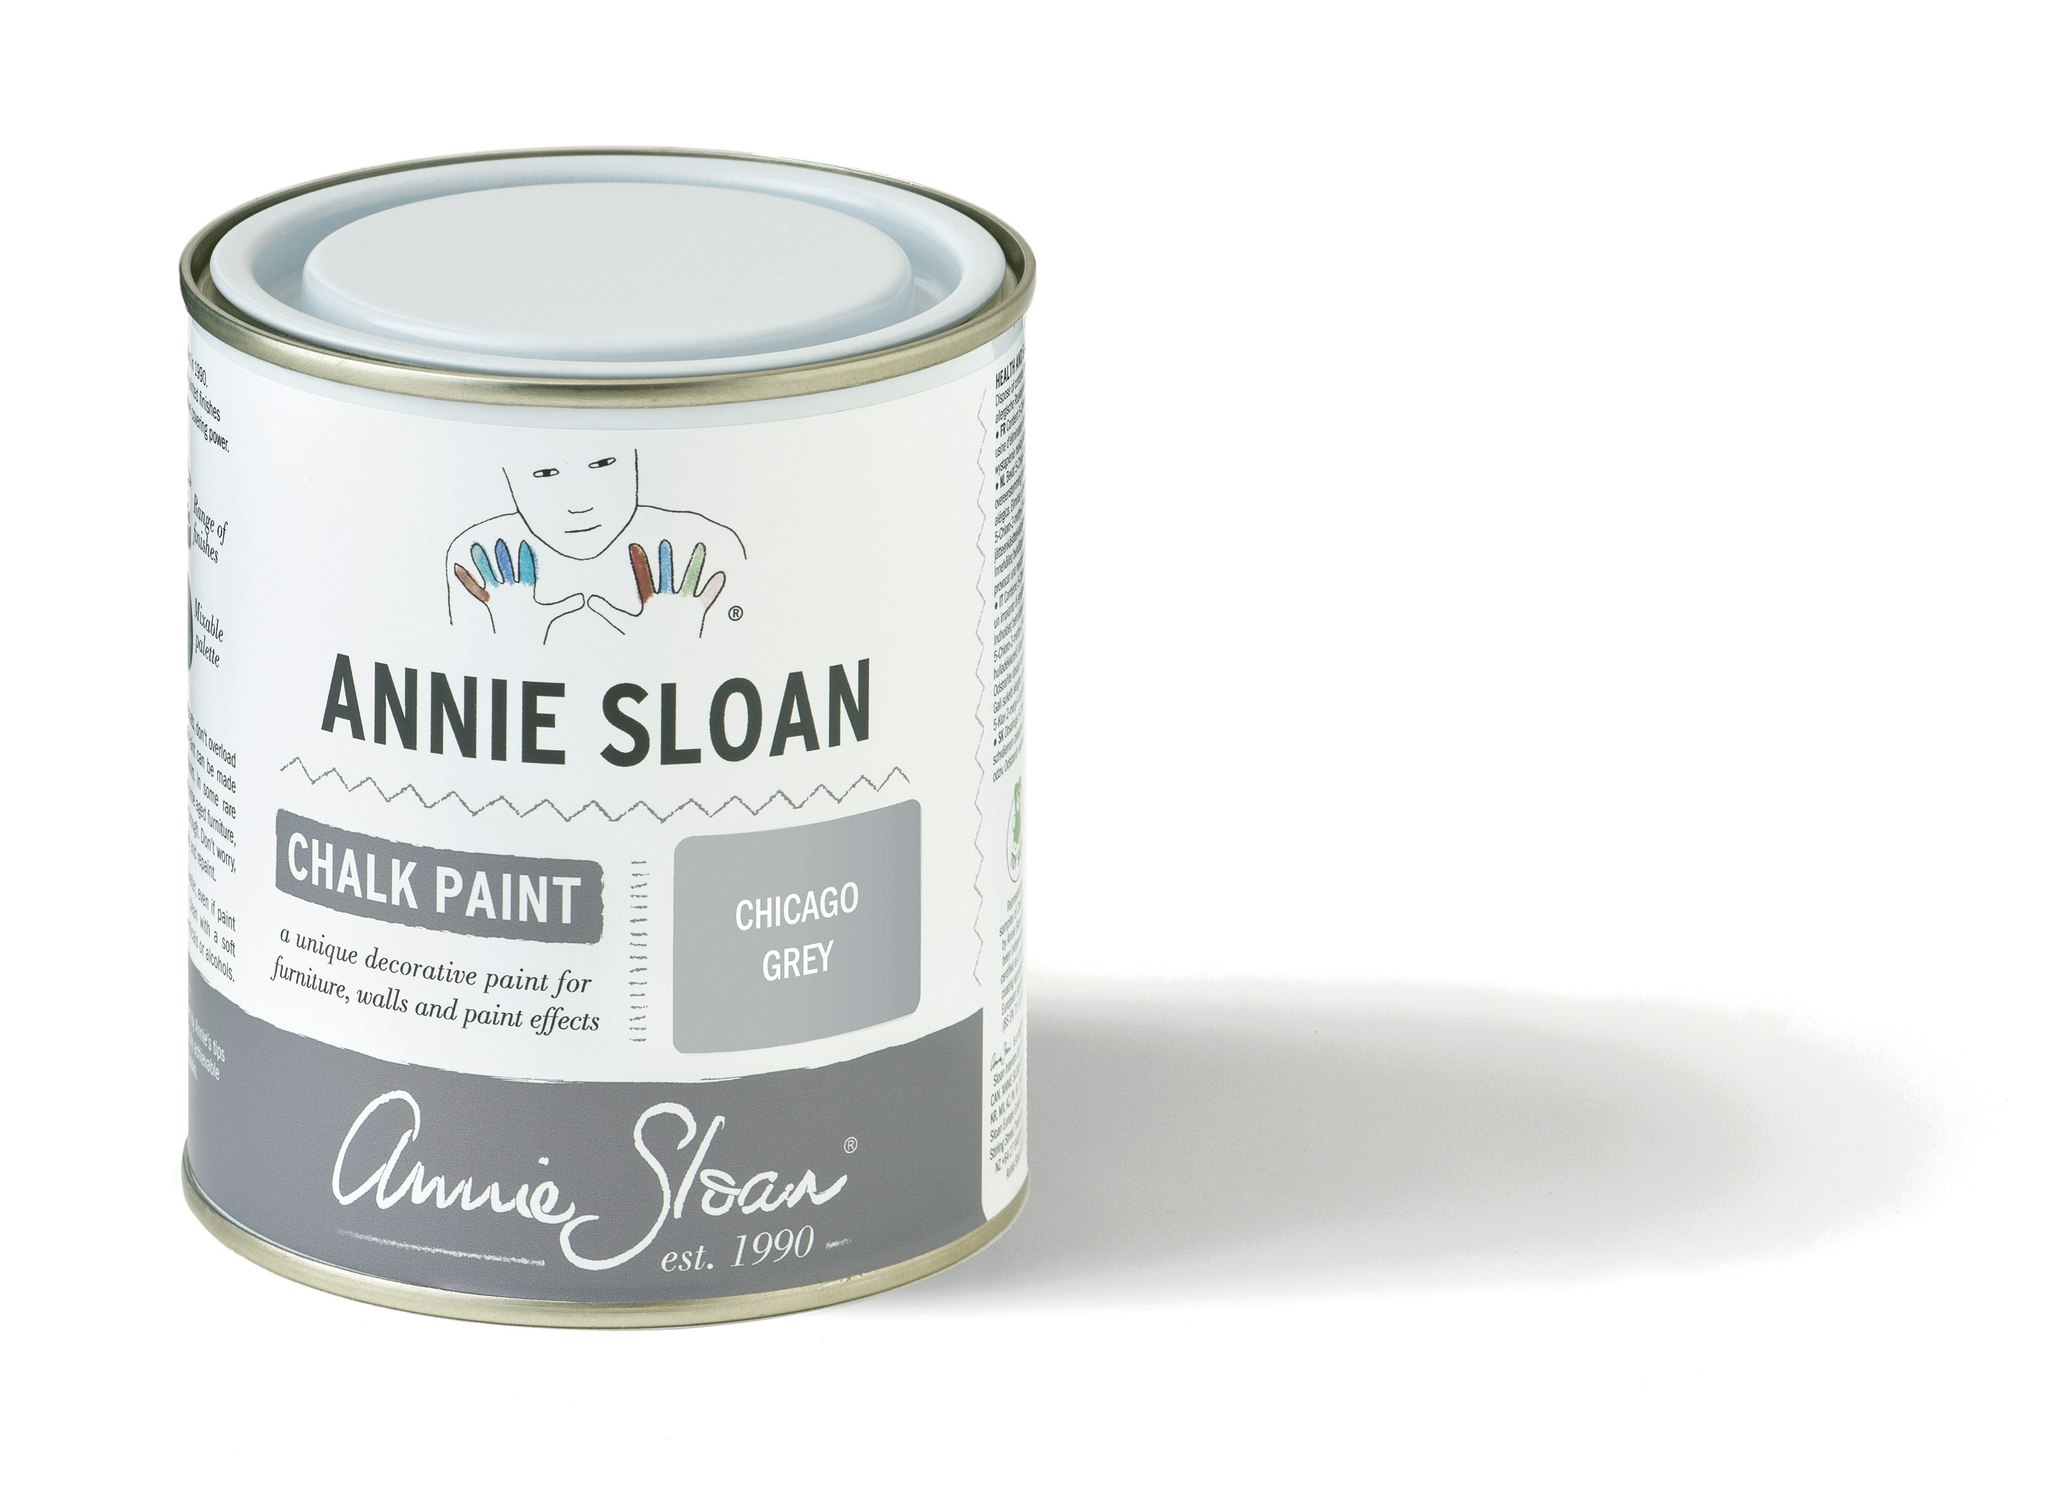 Annie Sloan Chalk paint Chicago Grey Glada ungmöns diversehandel